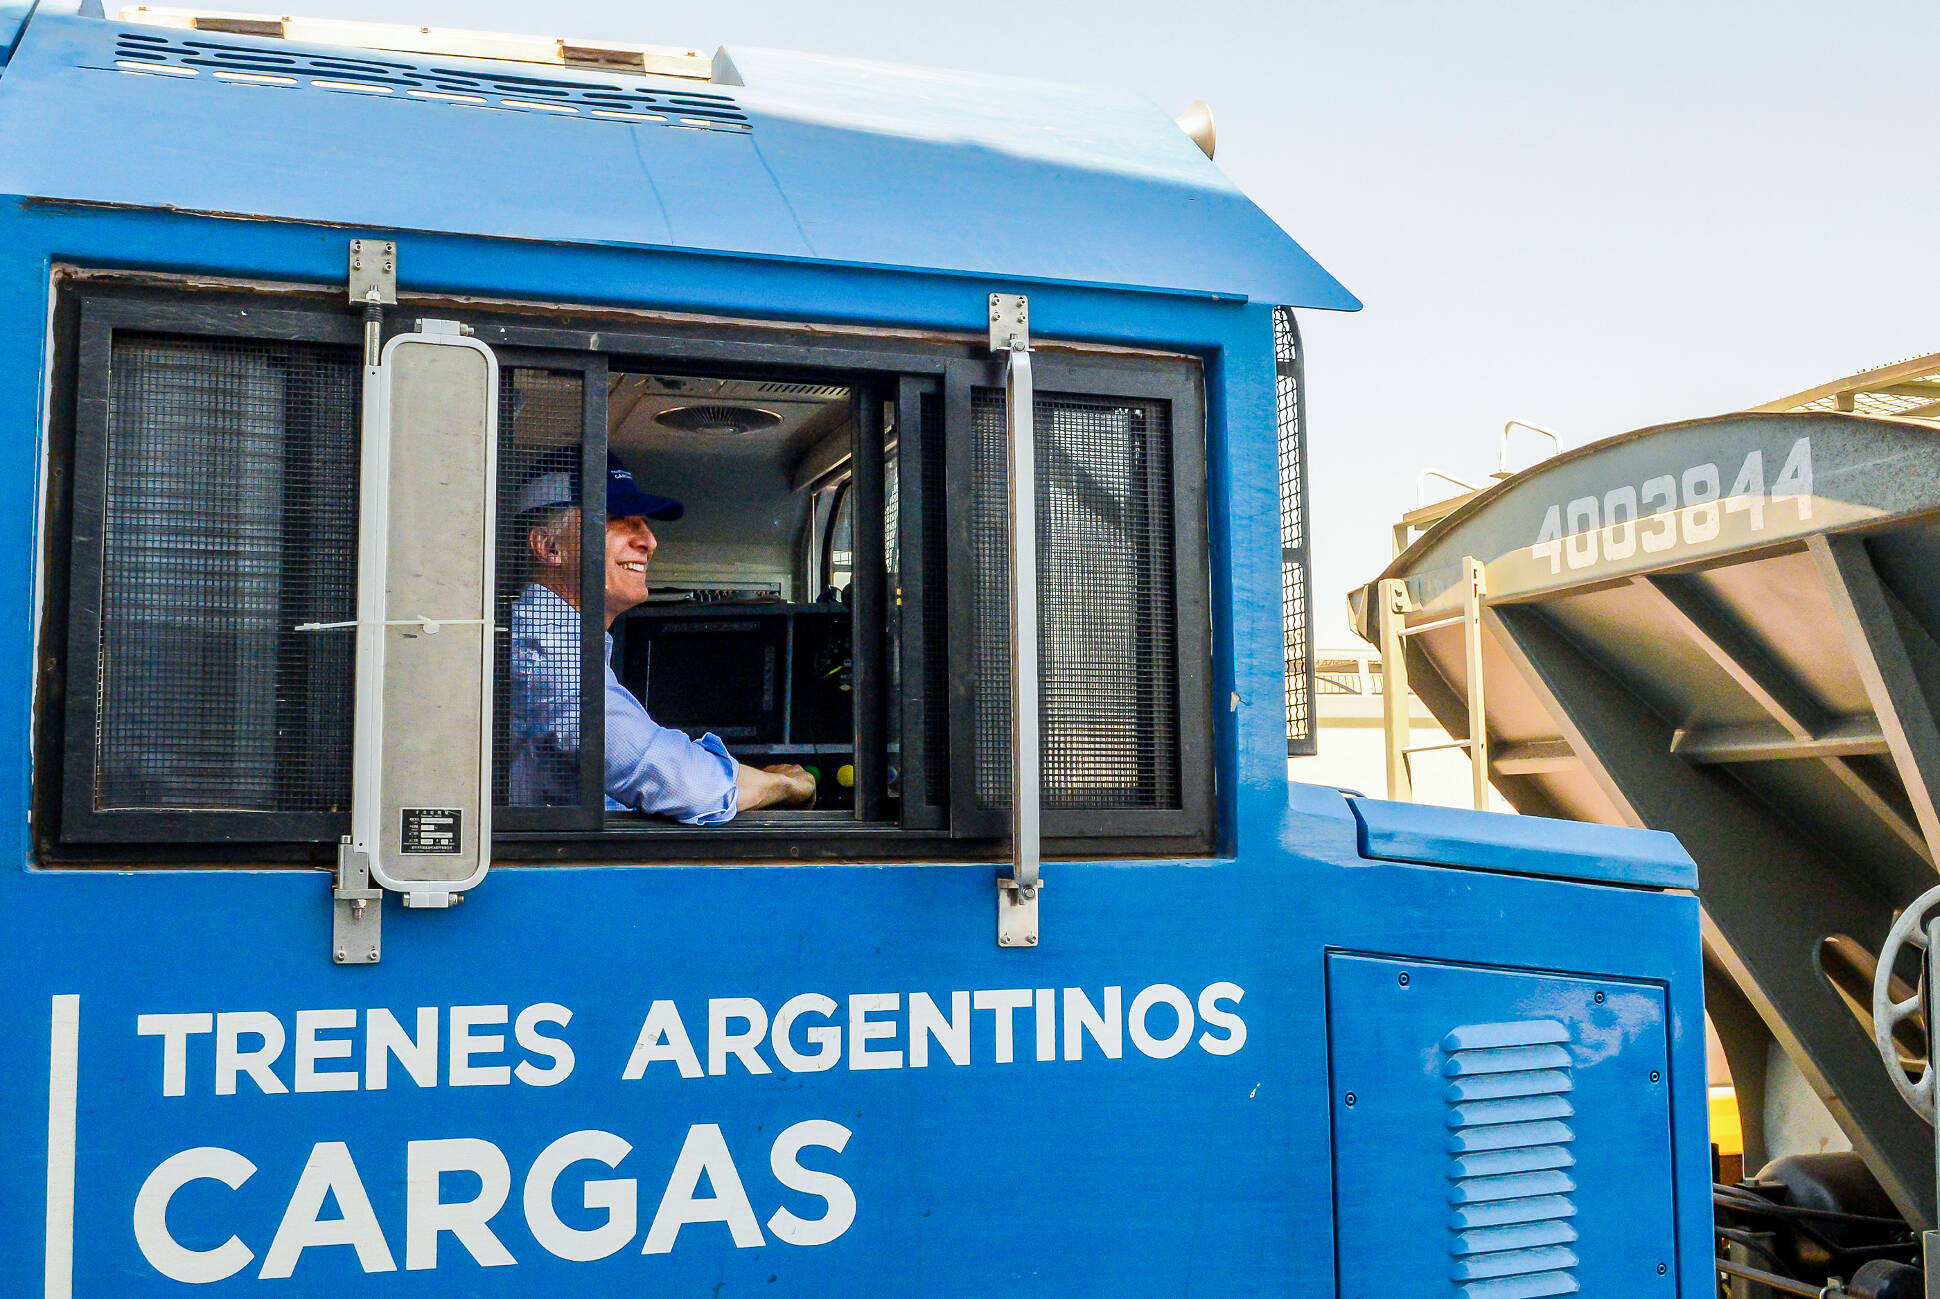 Macri destacó la reactivación del Belgrano Cargas como un paso más hacia la construcción de un país federal   